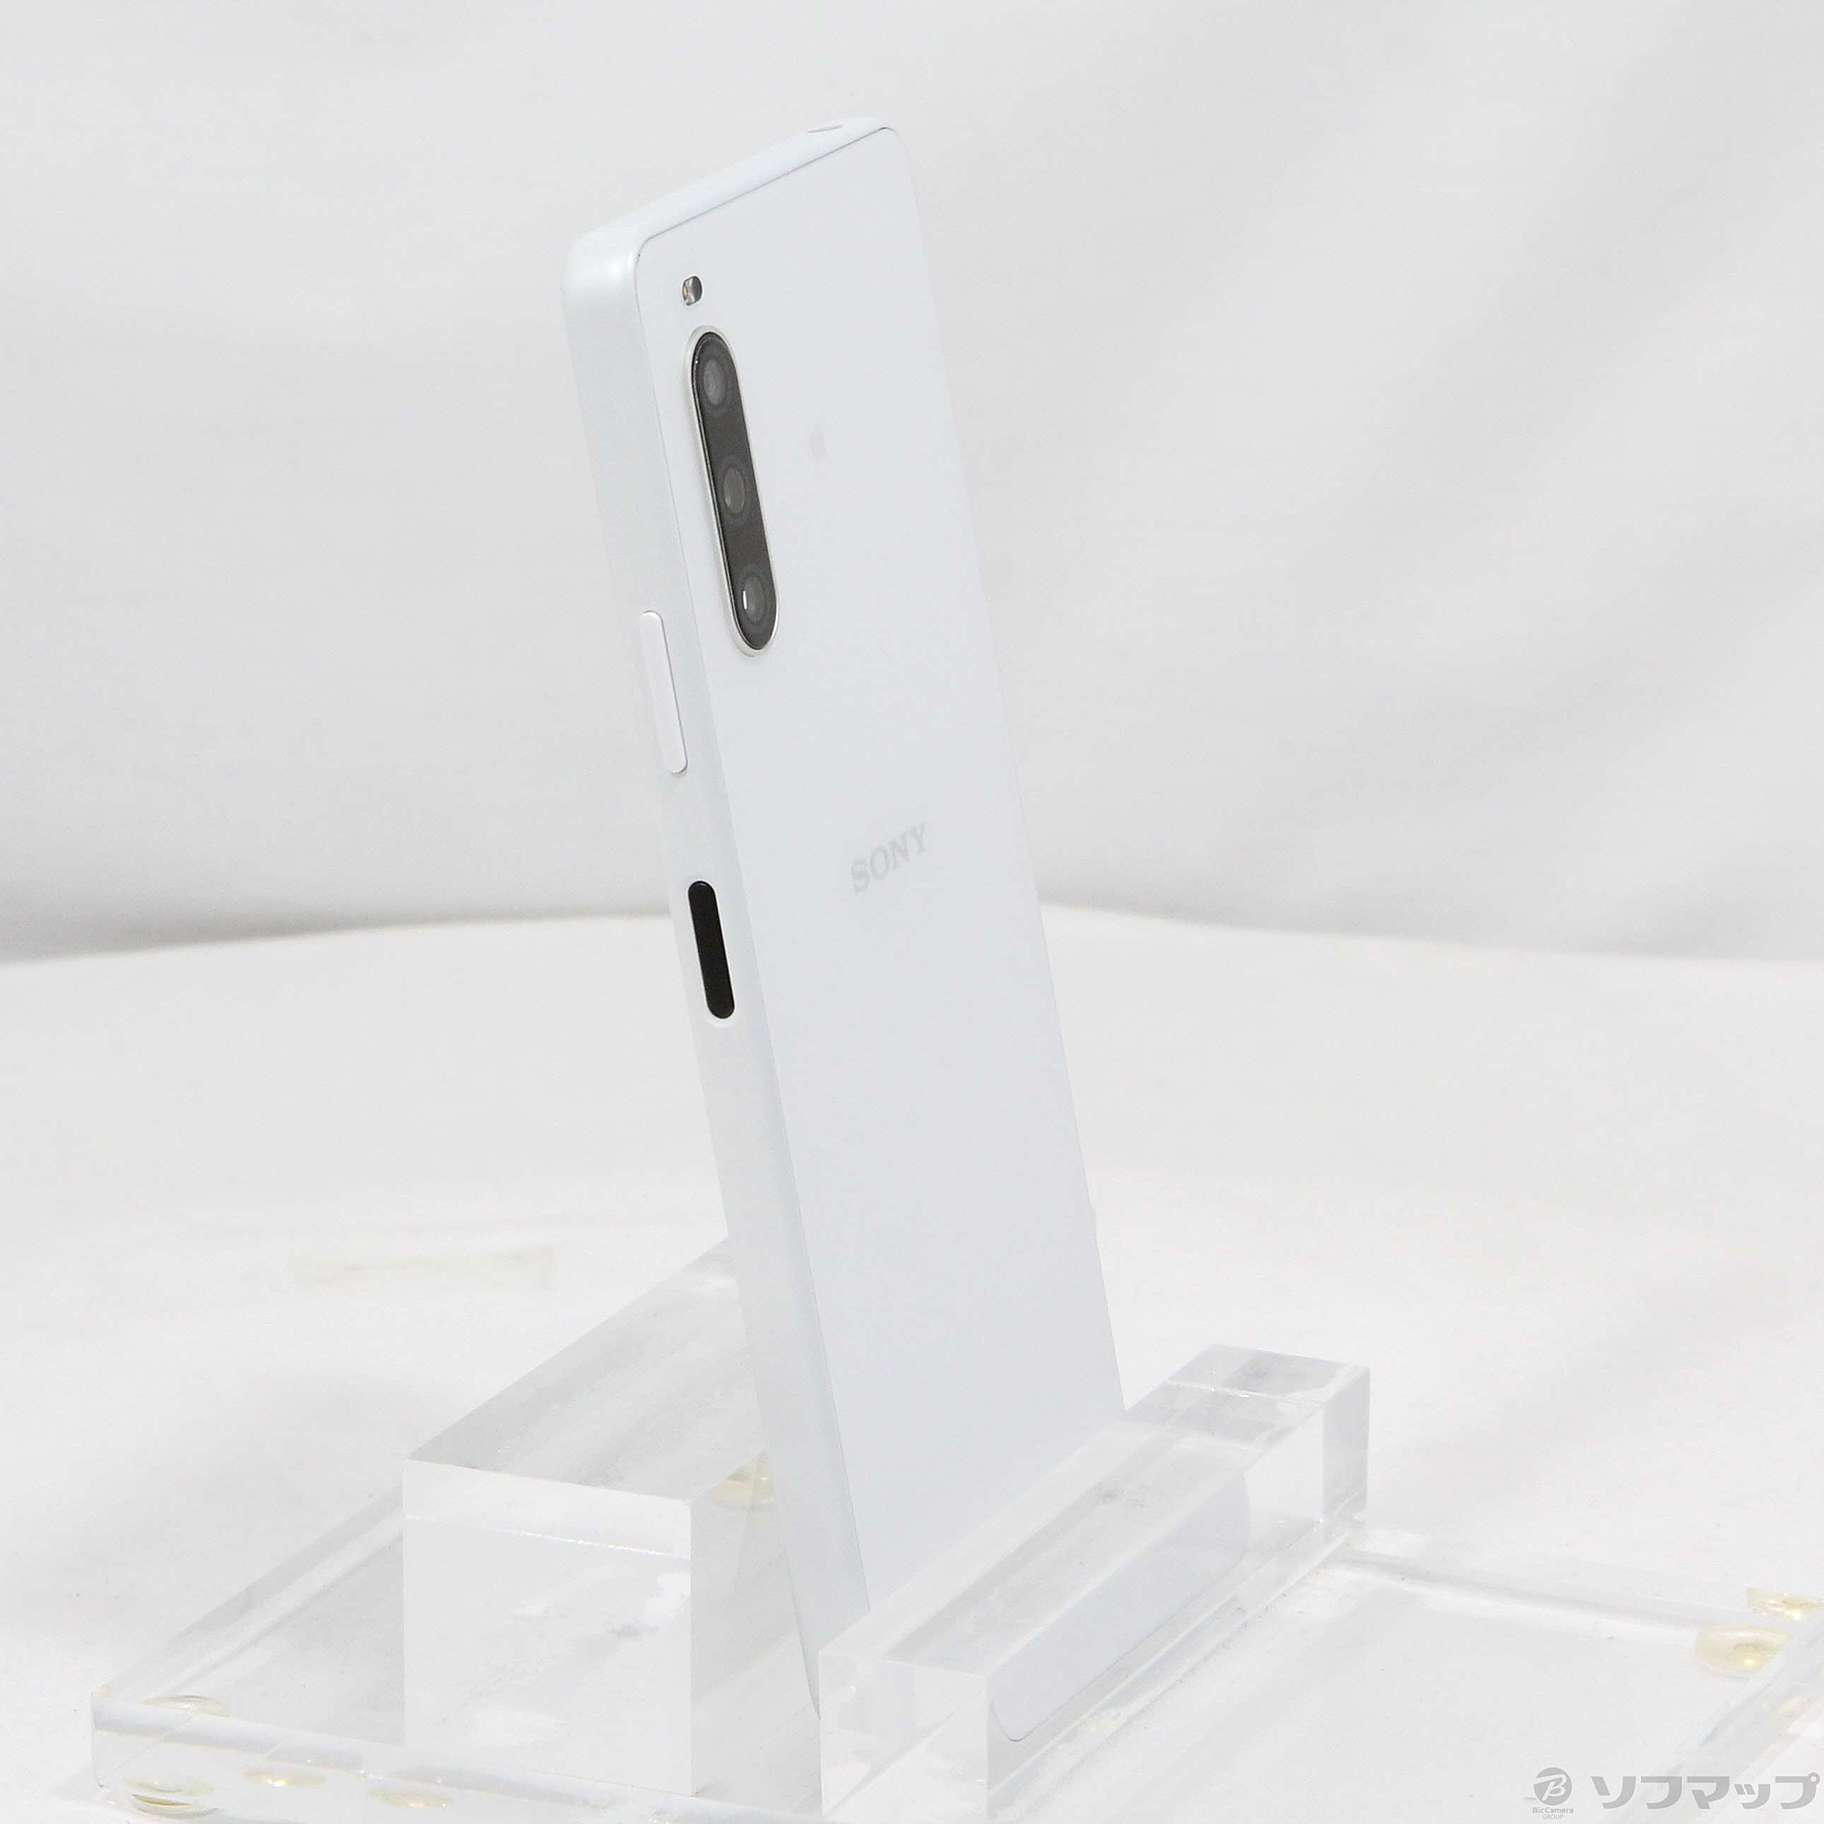 Xperia 10 IV ホワイト 128 GB Softbank - スマートフォン本体